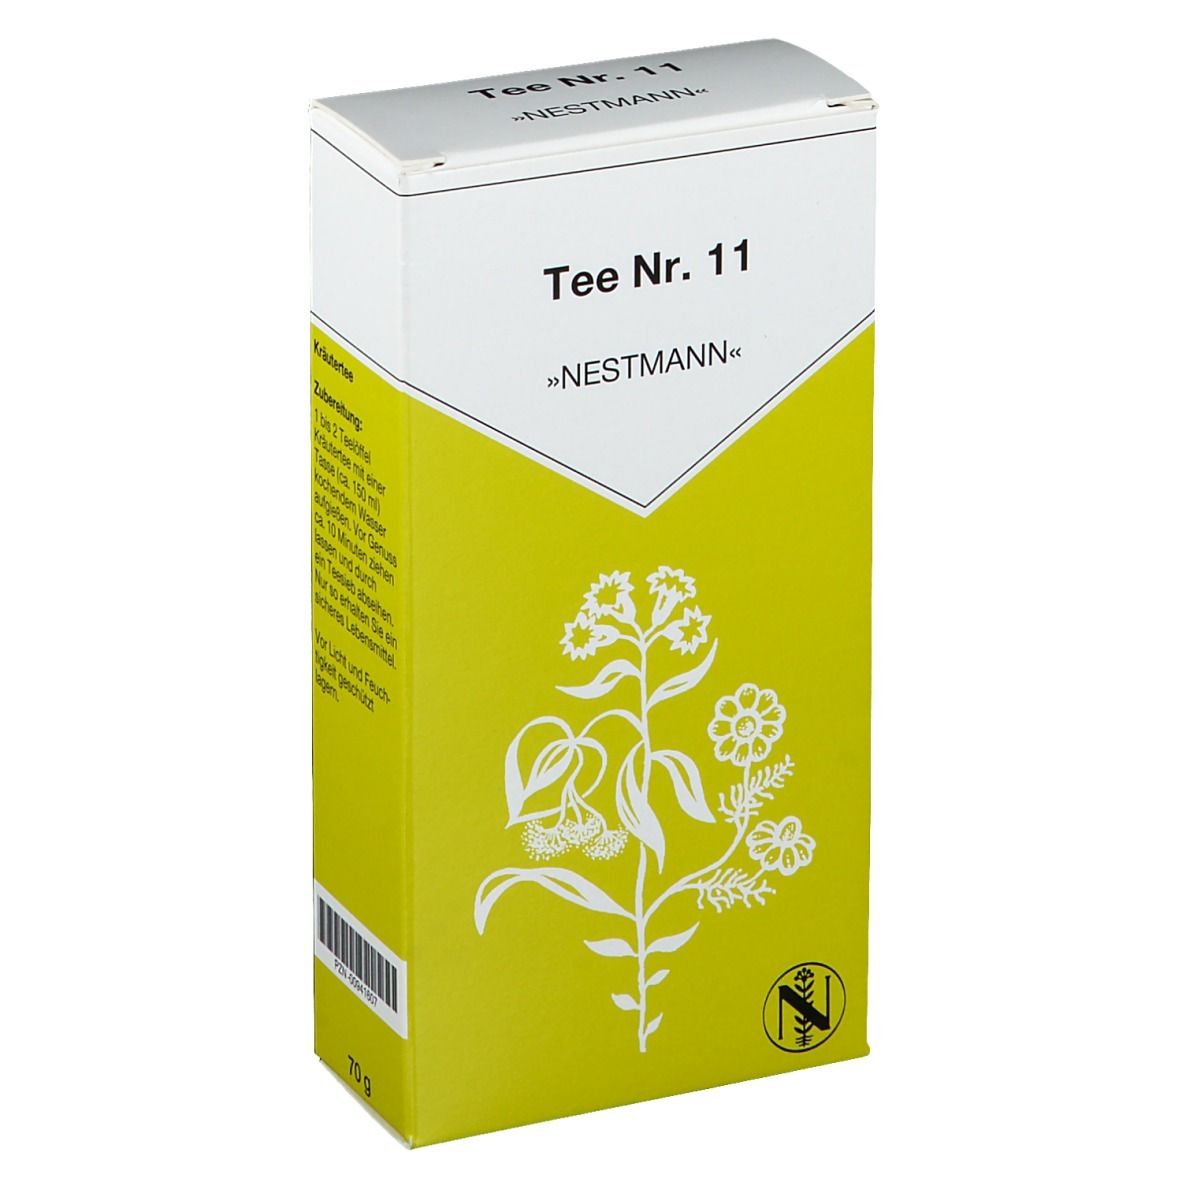 Nestmann Tee Nr.11